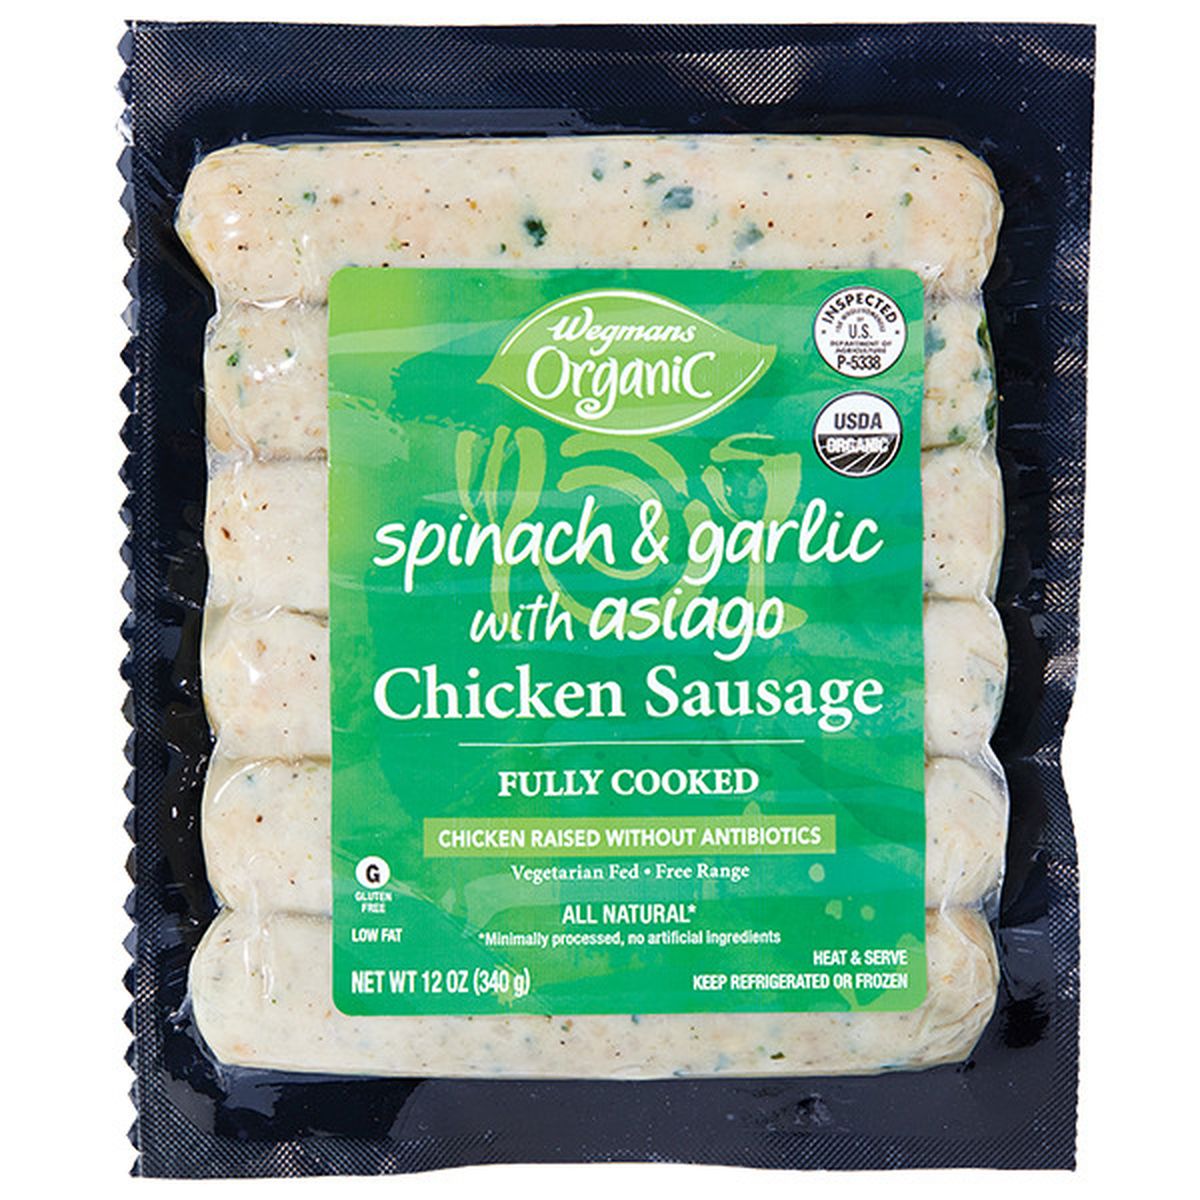 Calories in Wegmans Organic Spinach & Garlic with Asiago Chicken Sausage